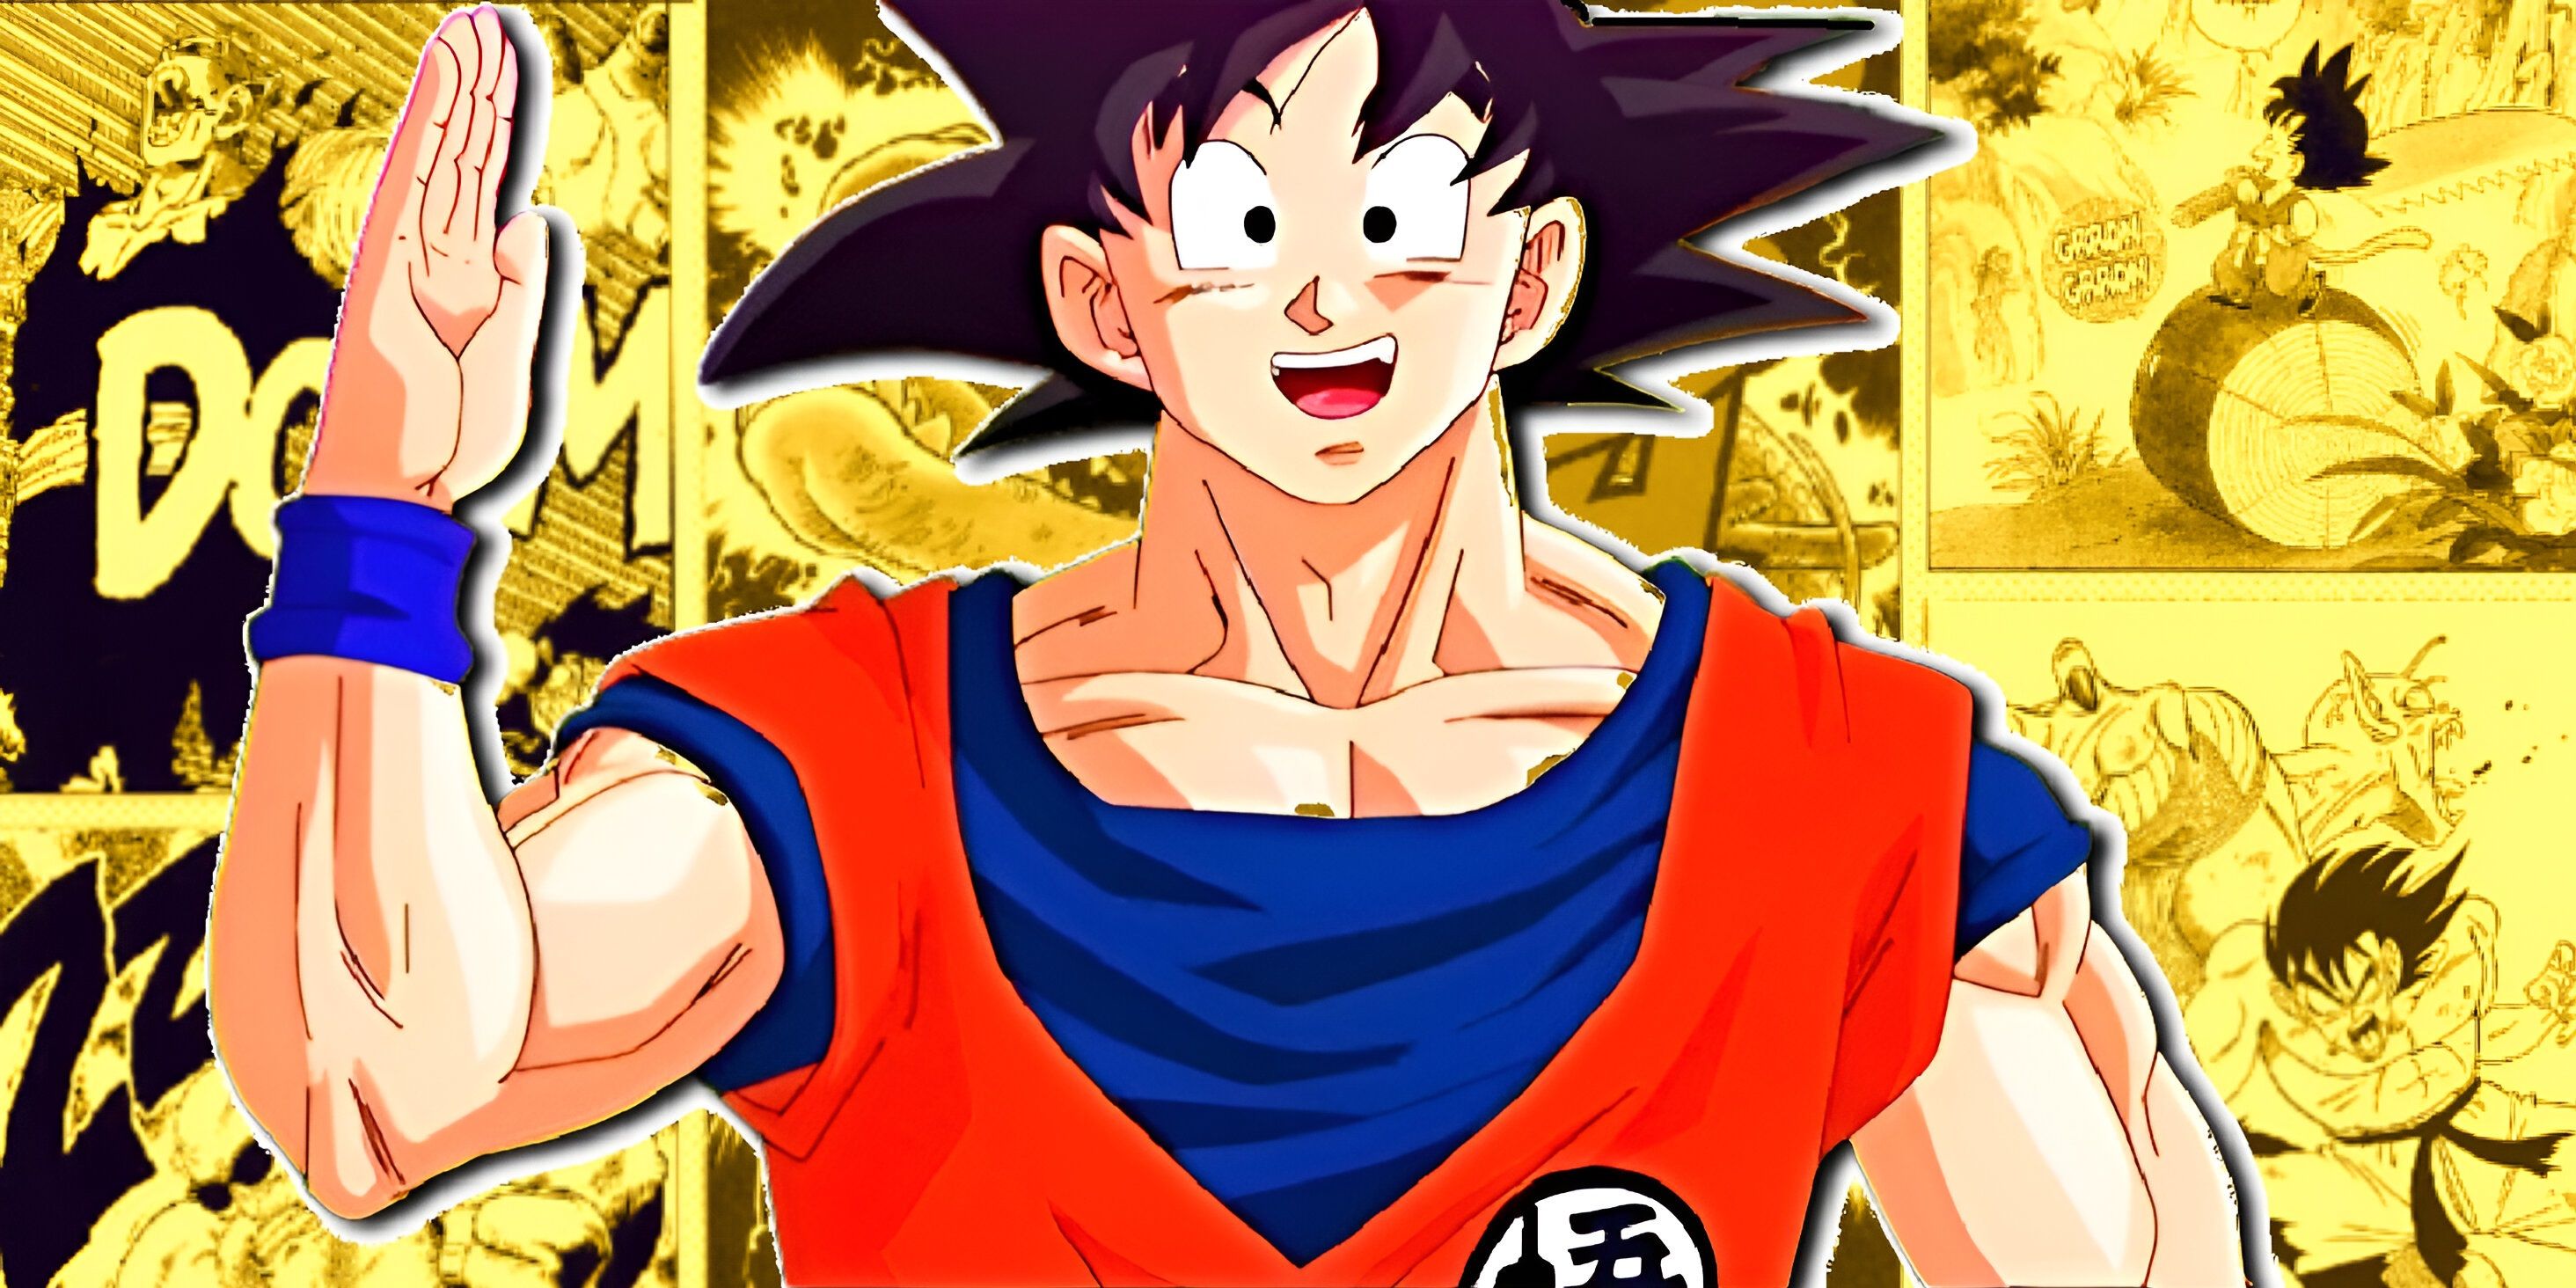 Goku from Dragon Ball with manga panels